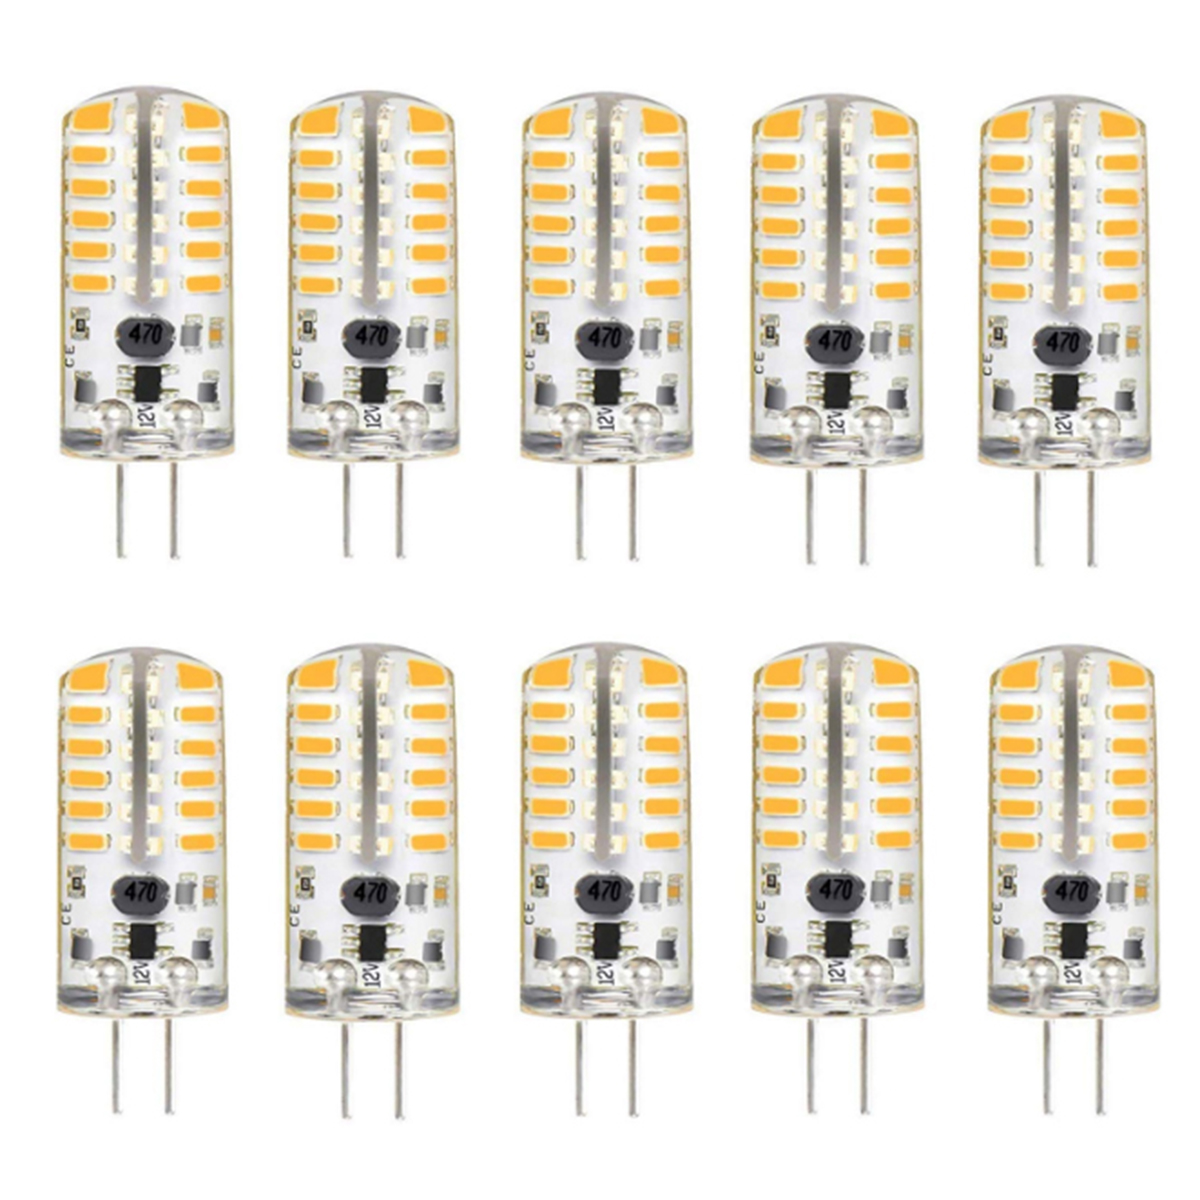 10PCS-DC12V-3W-G4-3014-48SMD-LED-Light-Bulb-Bi-Pin-Base-Capsule-Corn-Lamp-3000K-6000K-Ultra-Bright-L-1890737-2